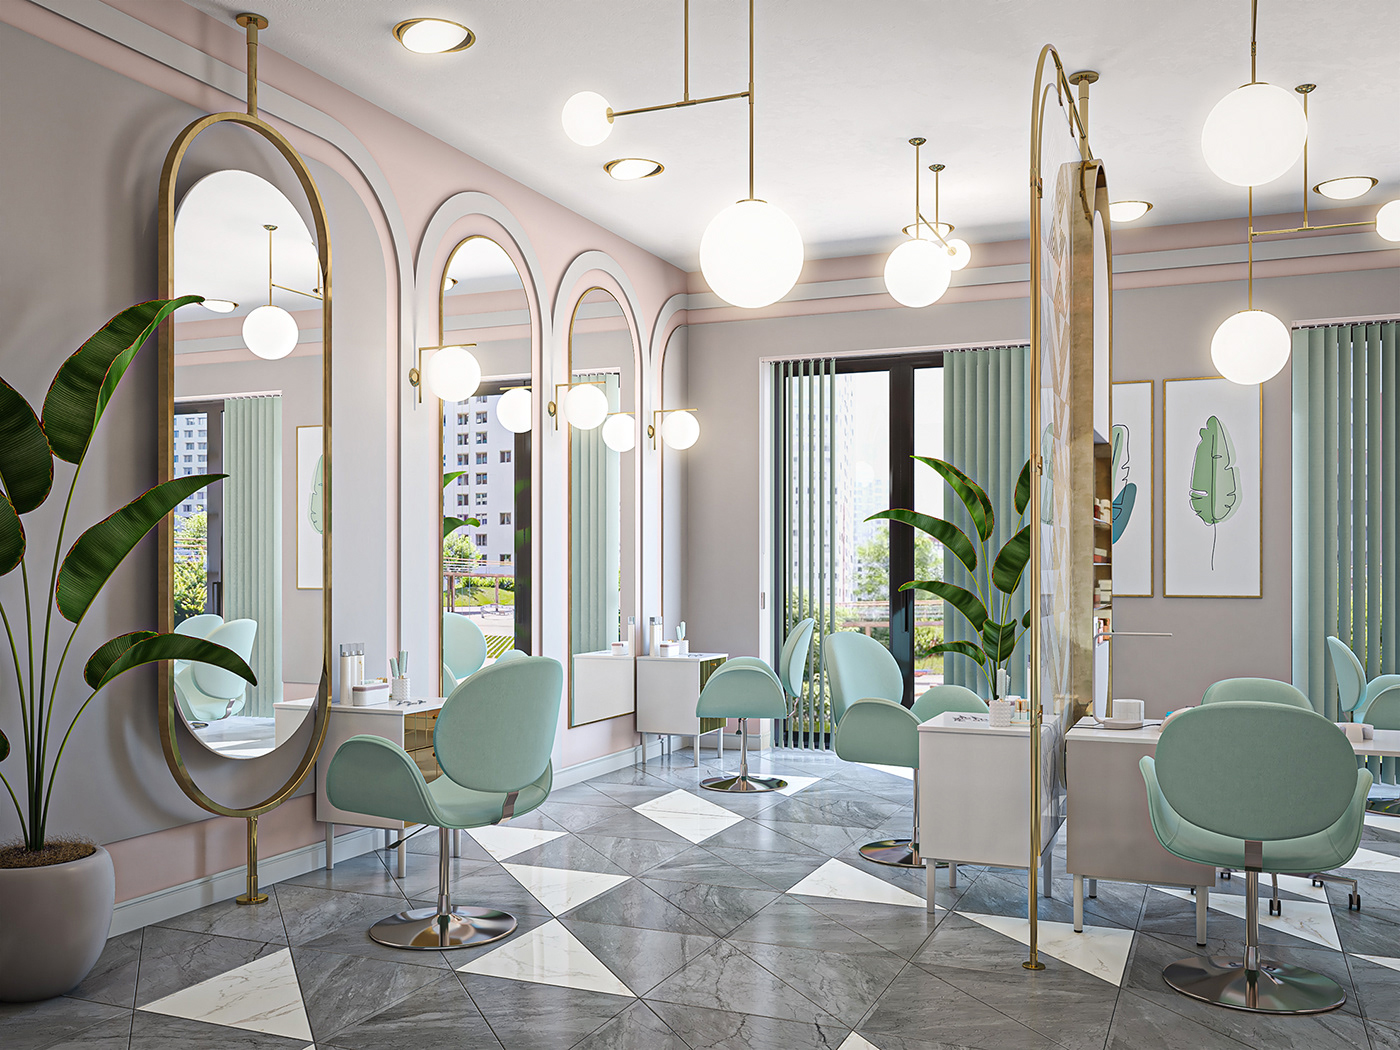 3D archvis beauty salon design Interior Memphis mint color